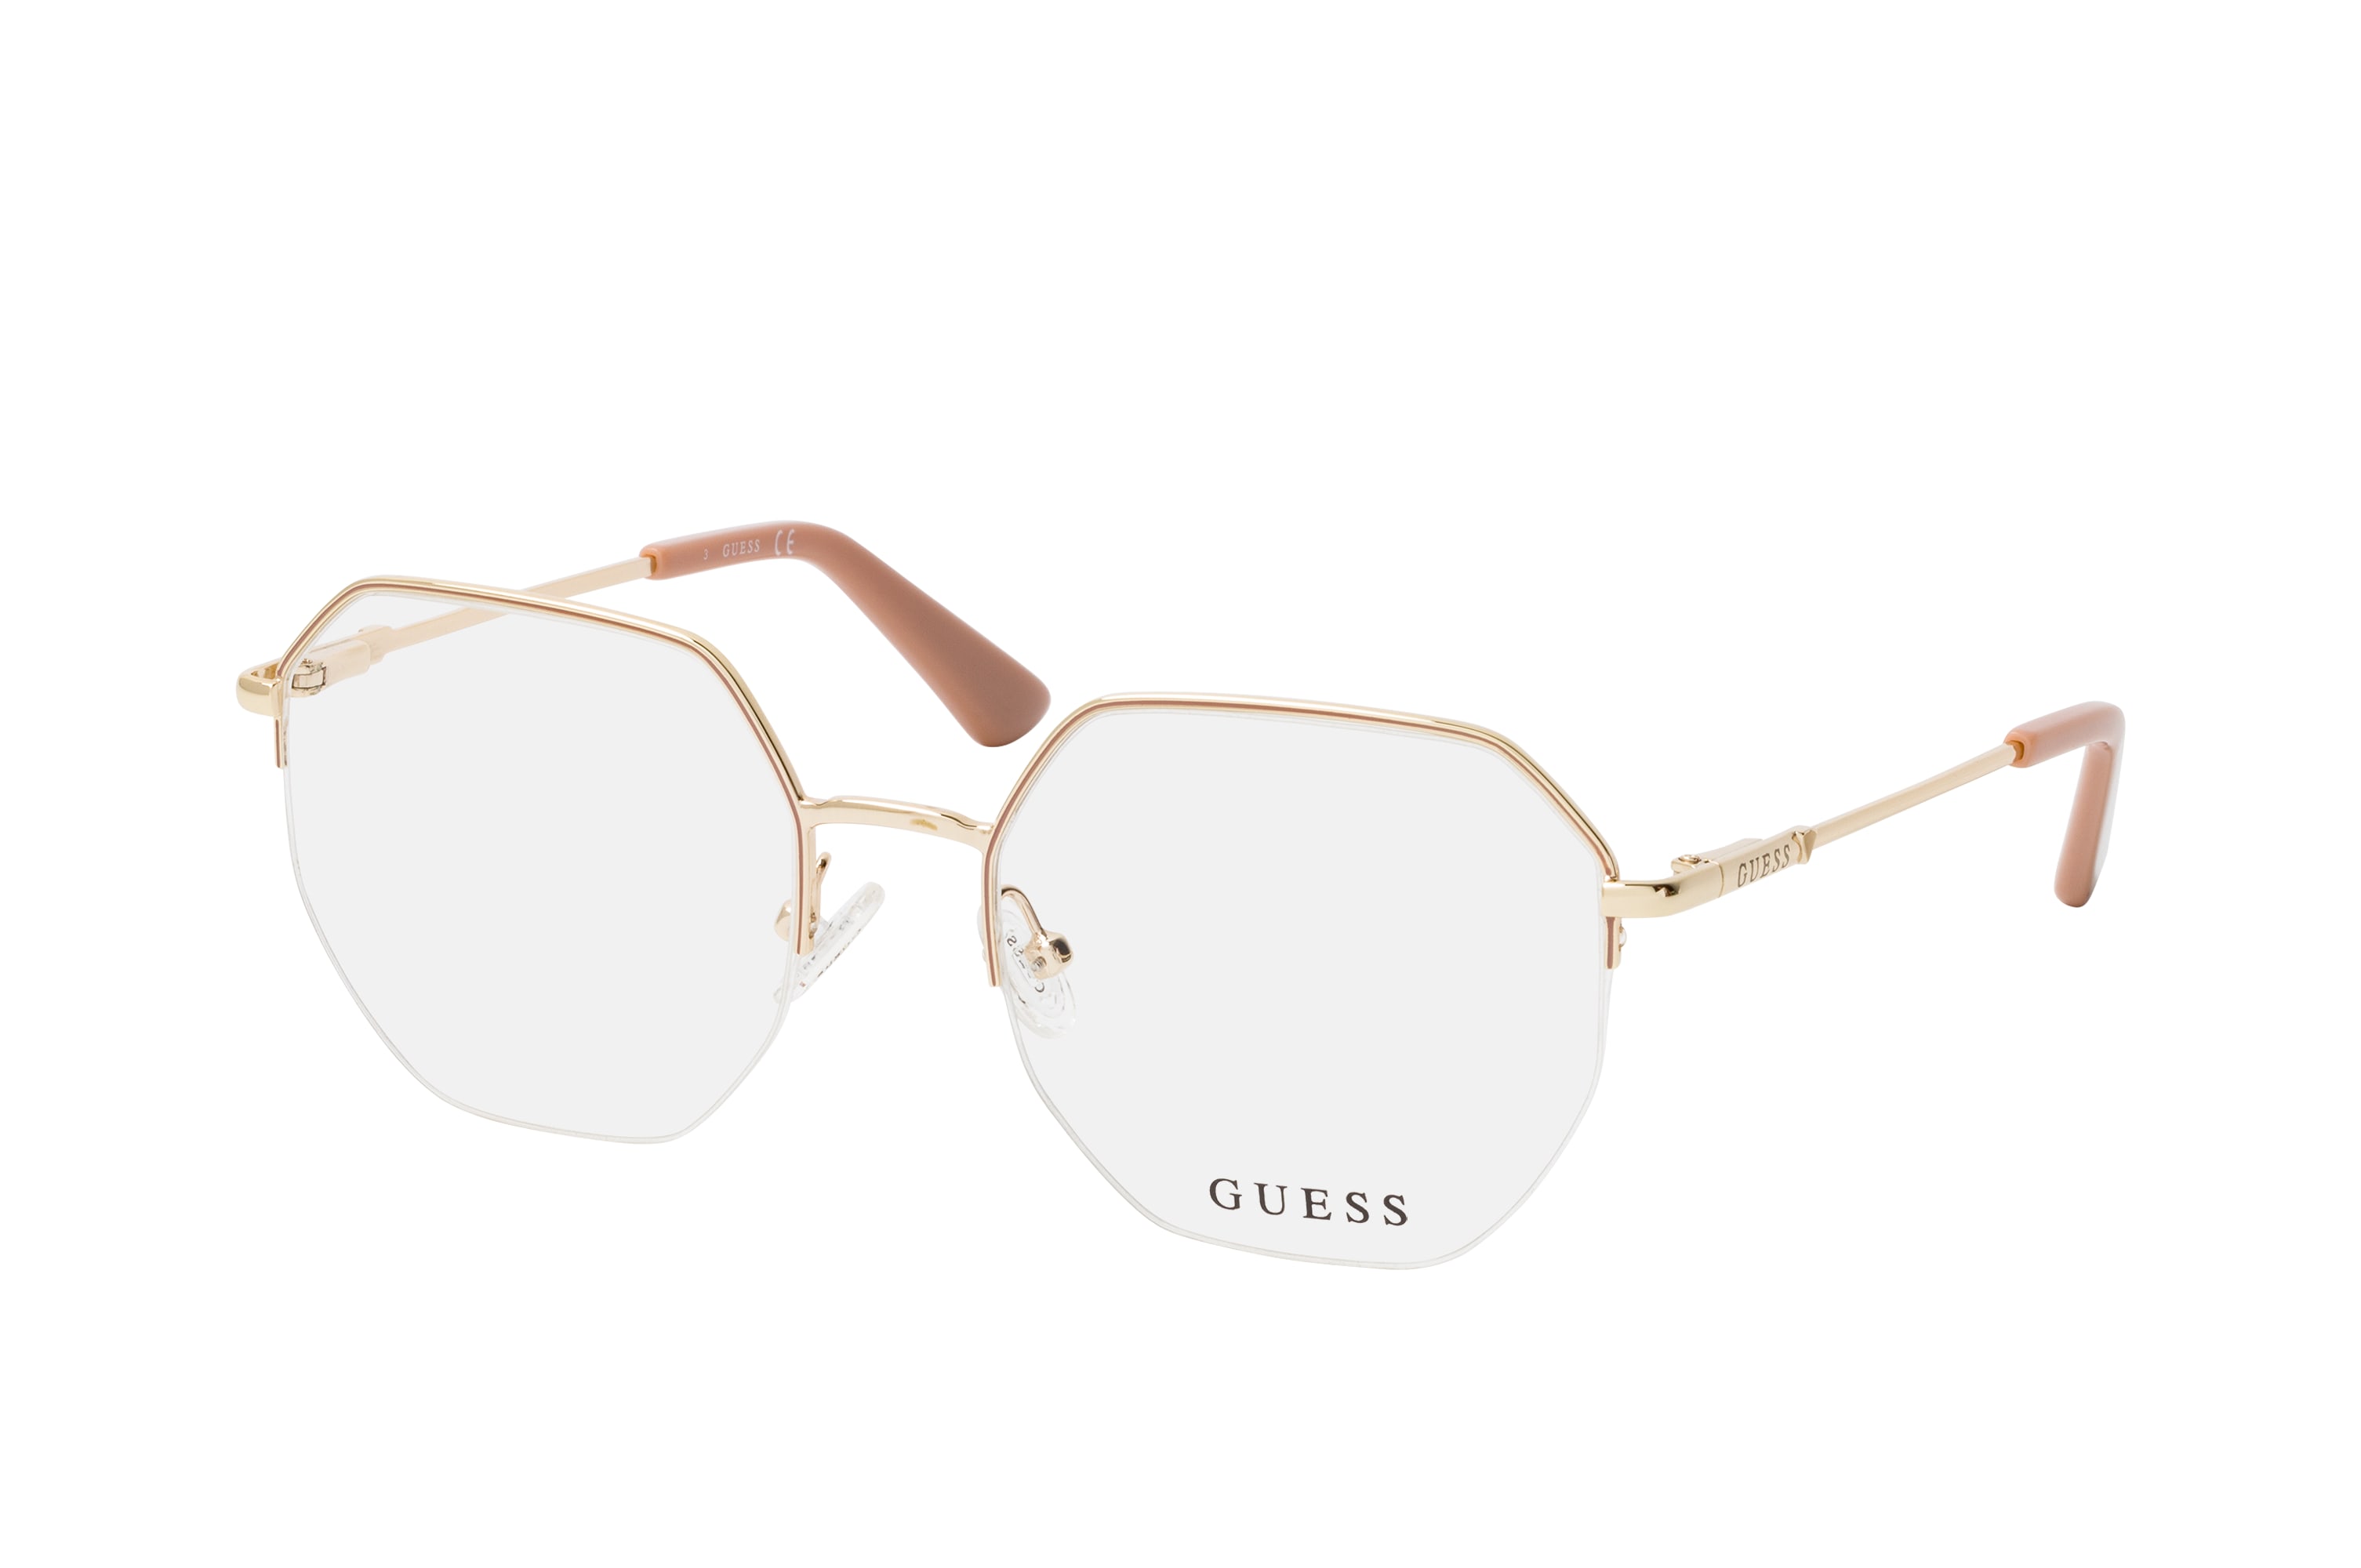 Buy Guess GU 2935 033 Glasses